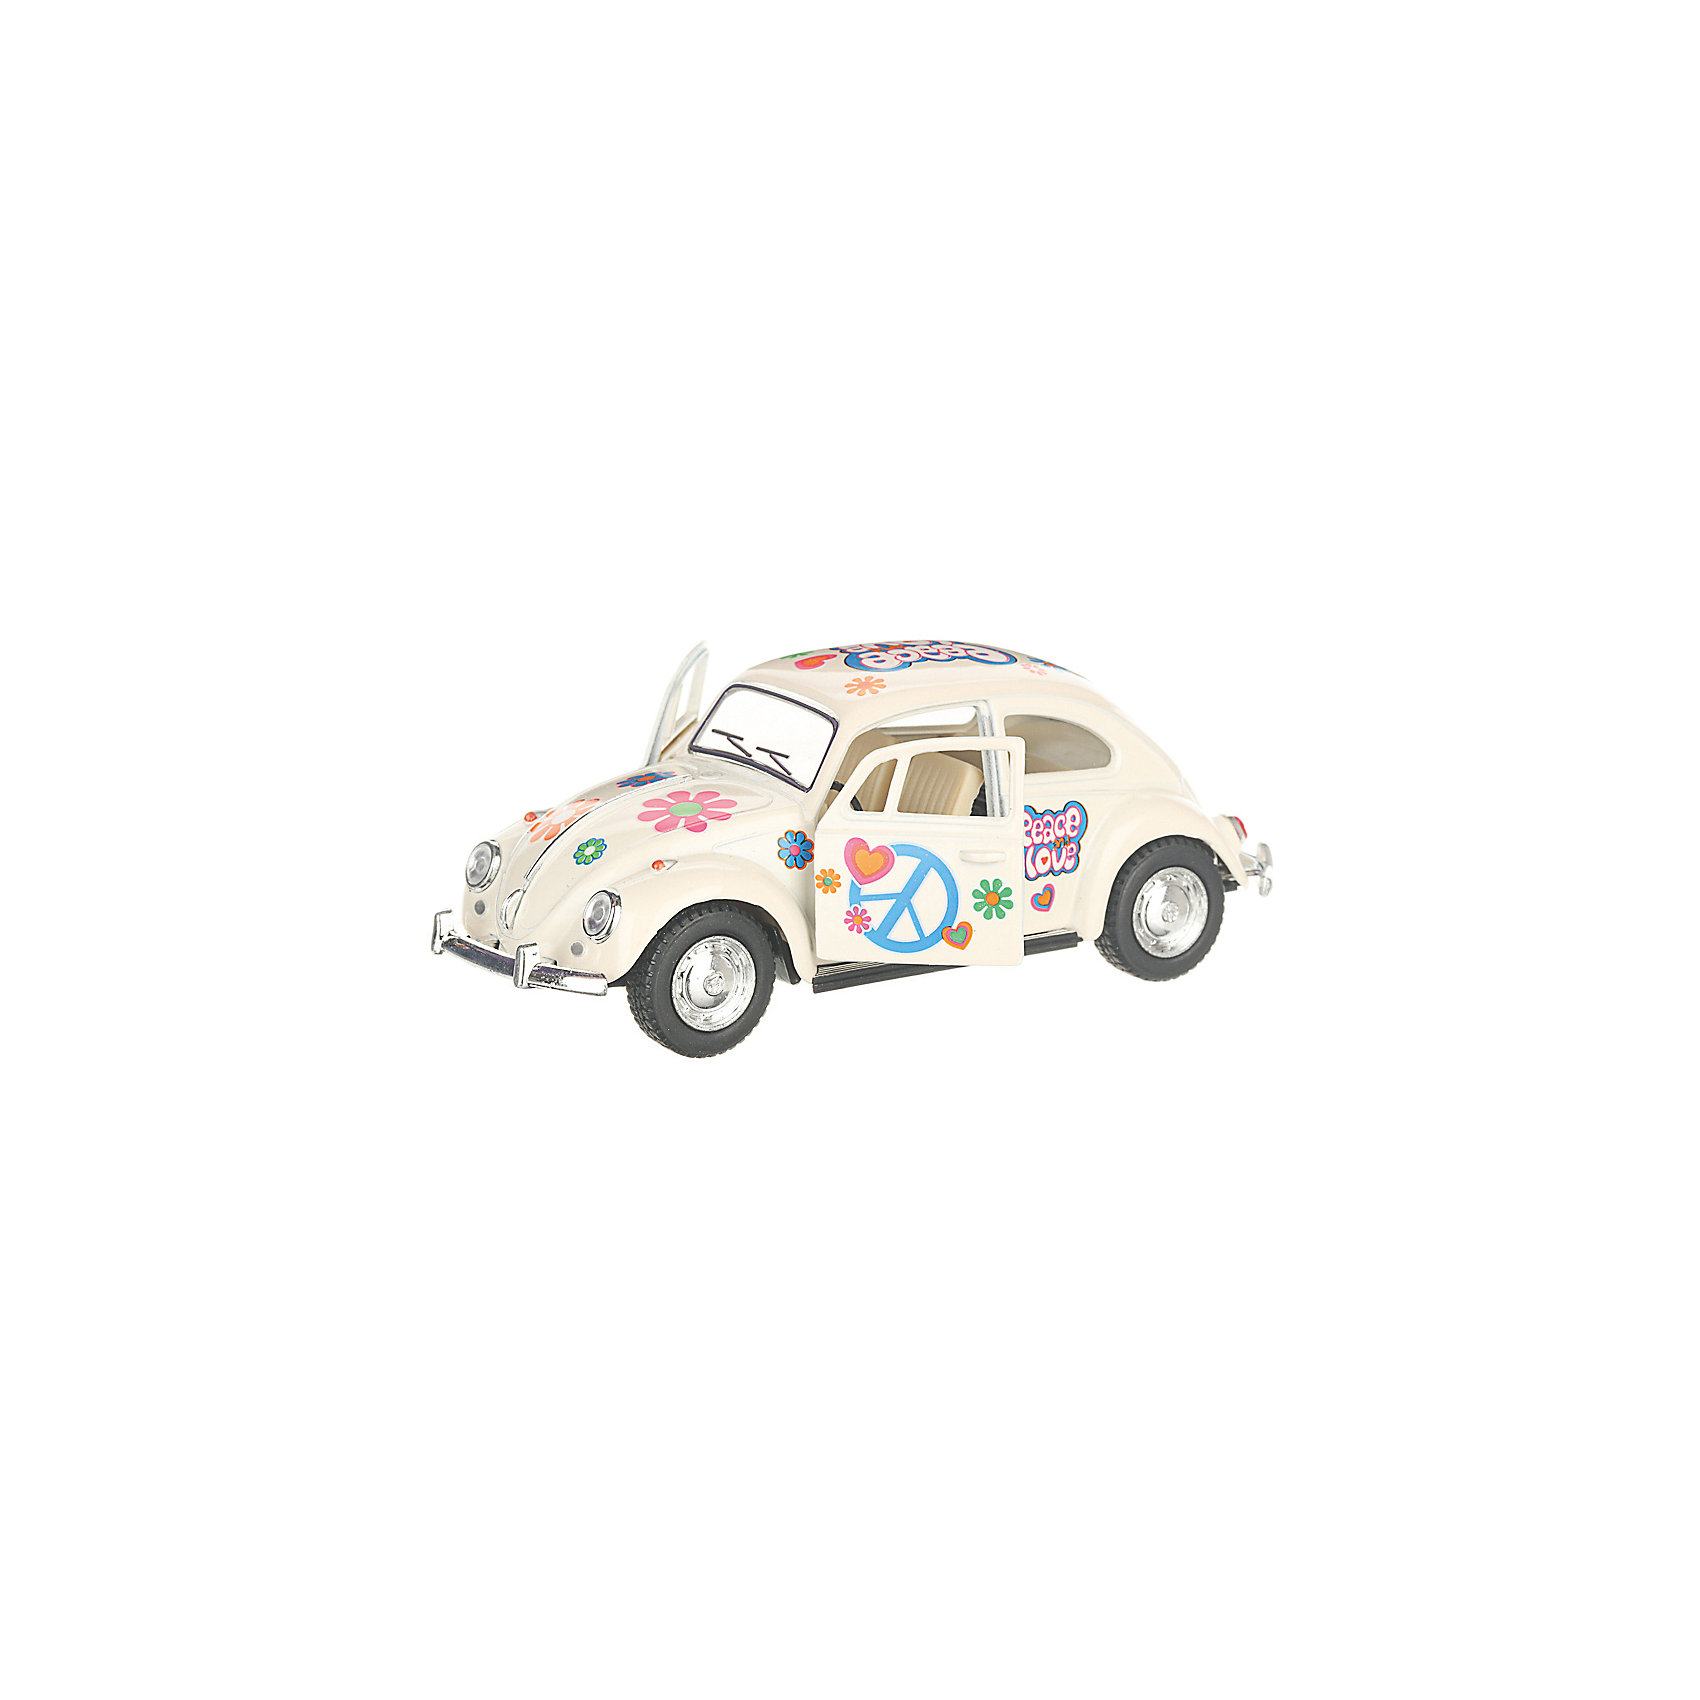 Коллекционная машинка 1967 Volkswagen Classical Beetle, белая Serinity Toys 13233038